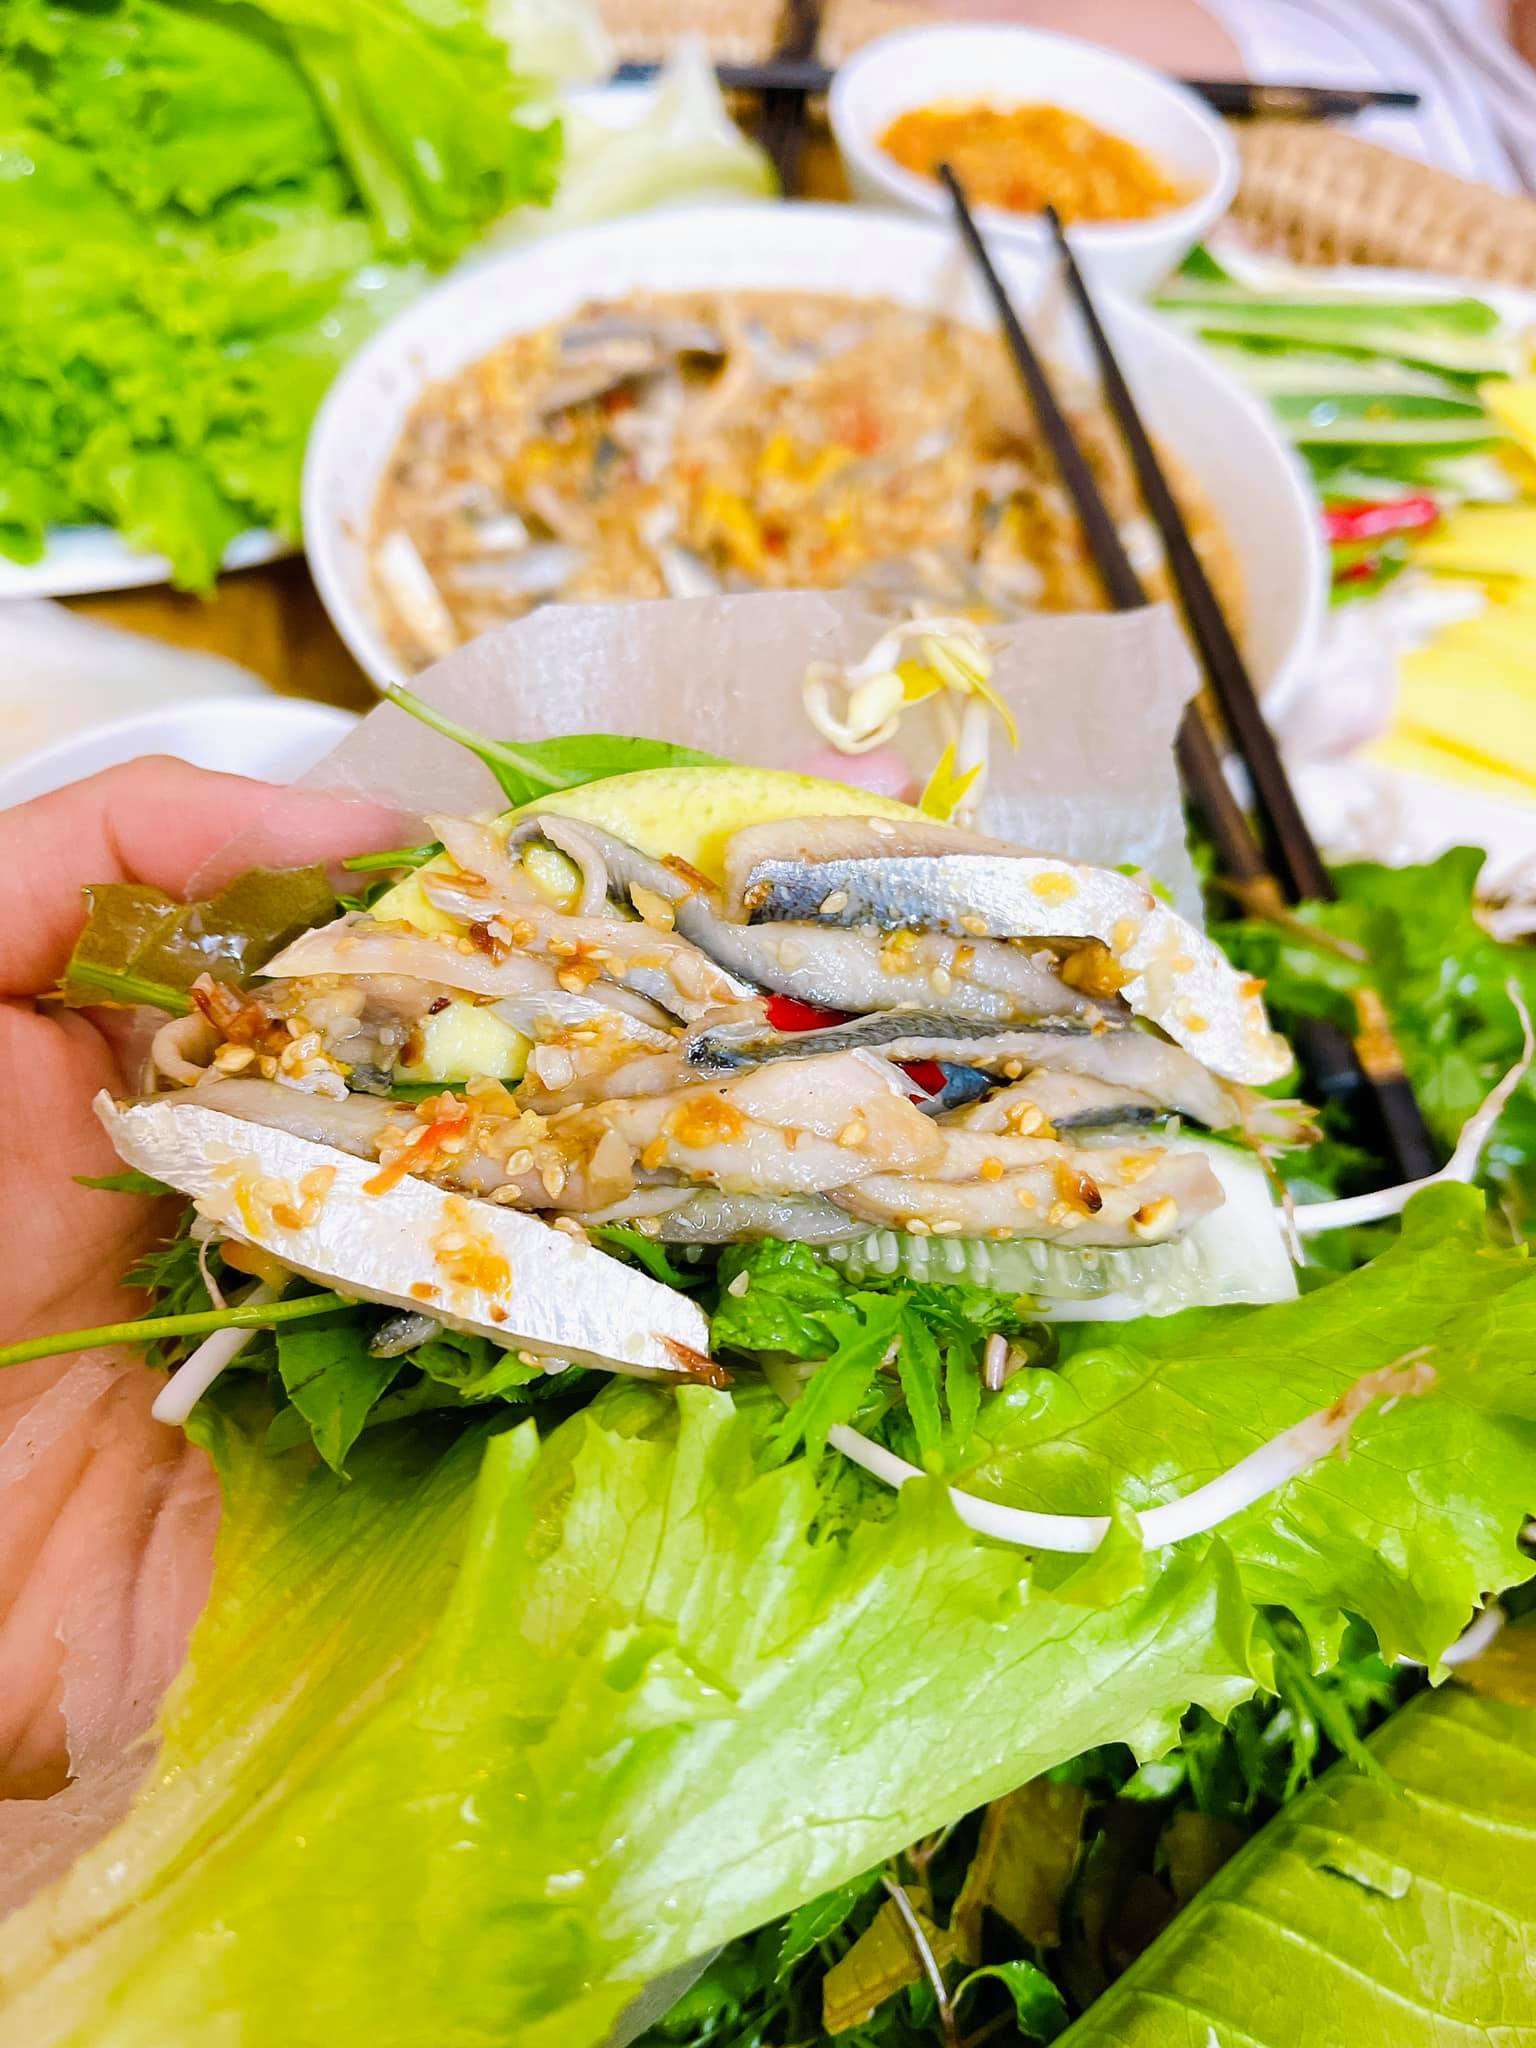 Đặc sản cá trích "ăn tươi nuốt sống" nổi tiếng ở Đà Nẵng - 9